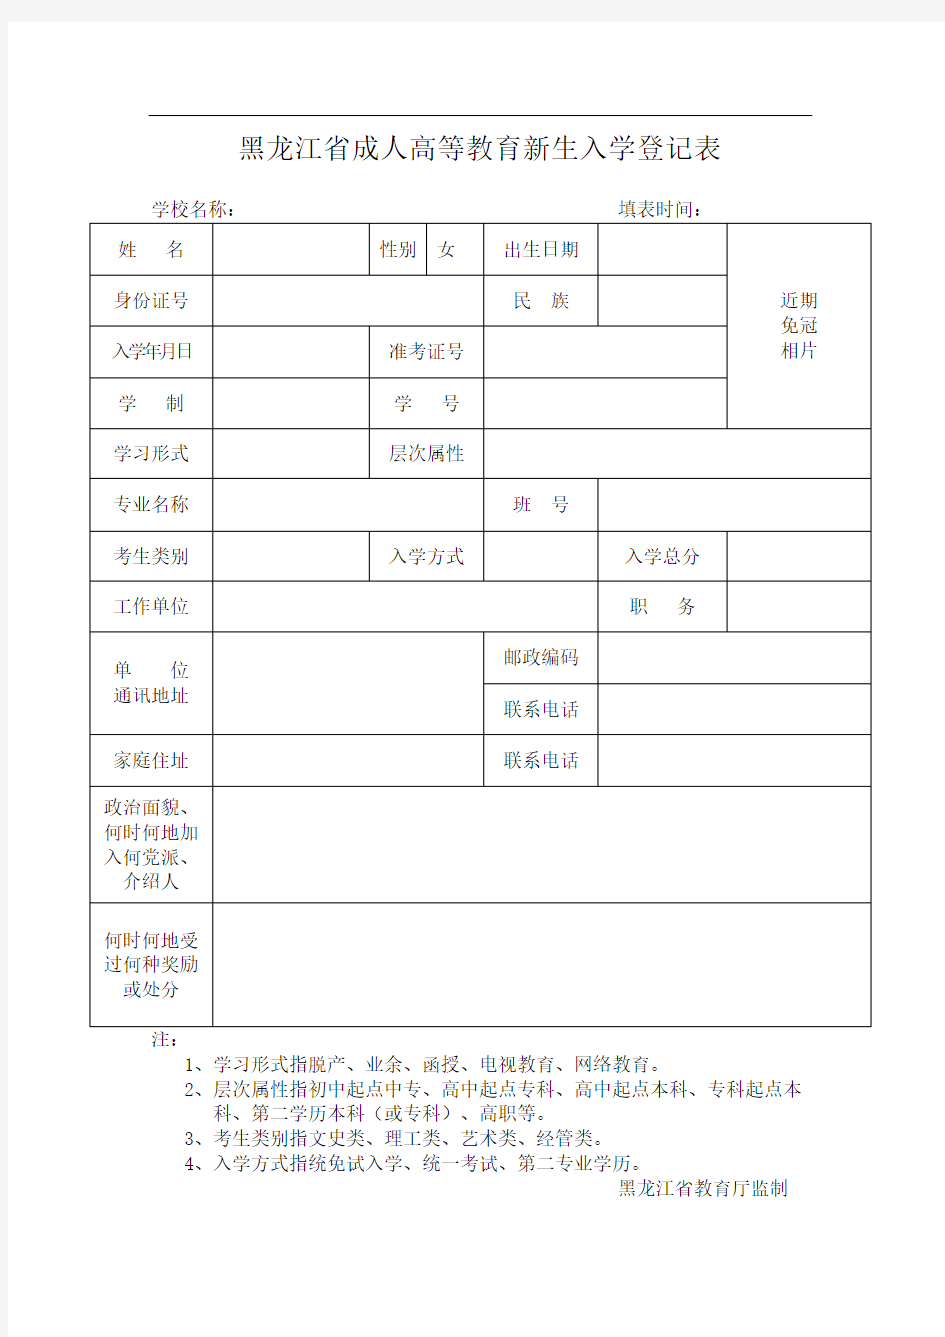 黑龙江省成人高等教育新生入学登记表